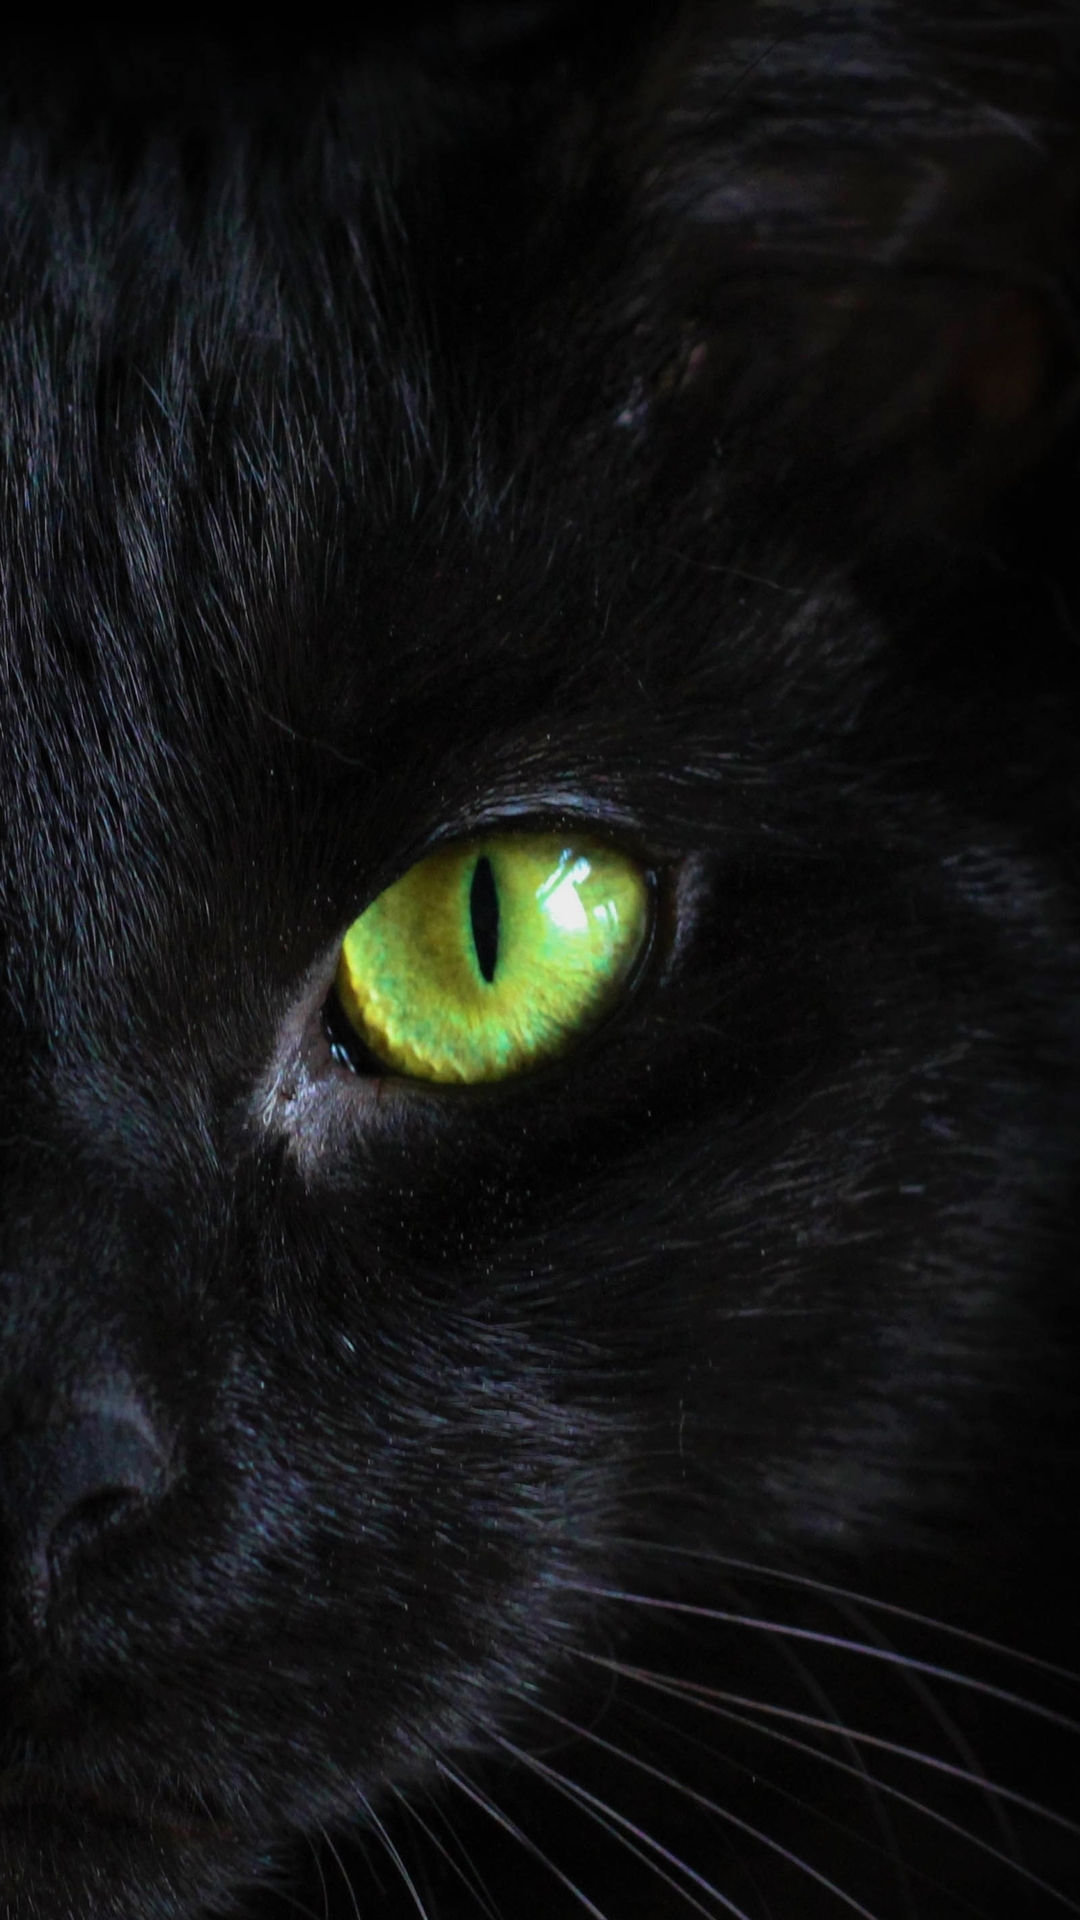 黑猫的青色瞳孔创意手机壁纸